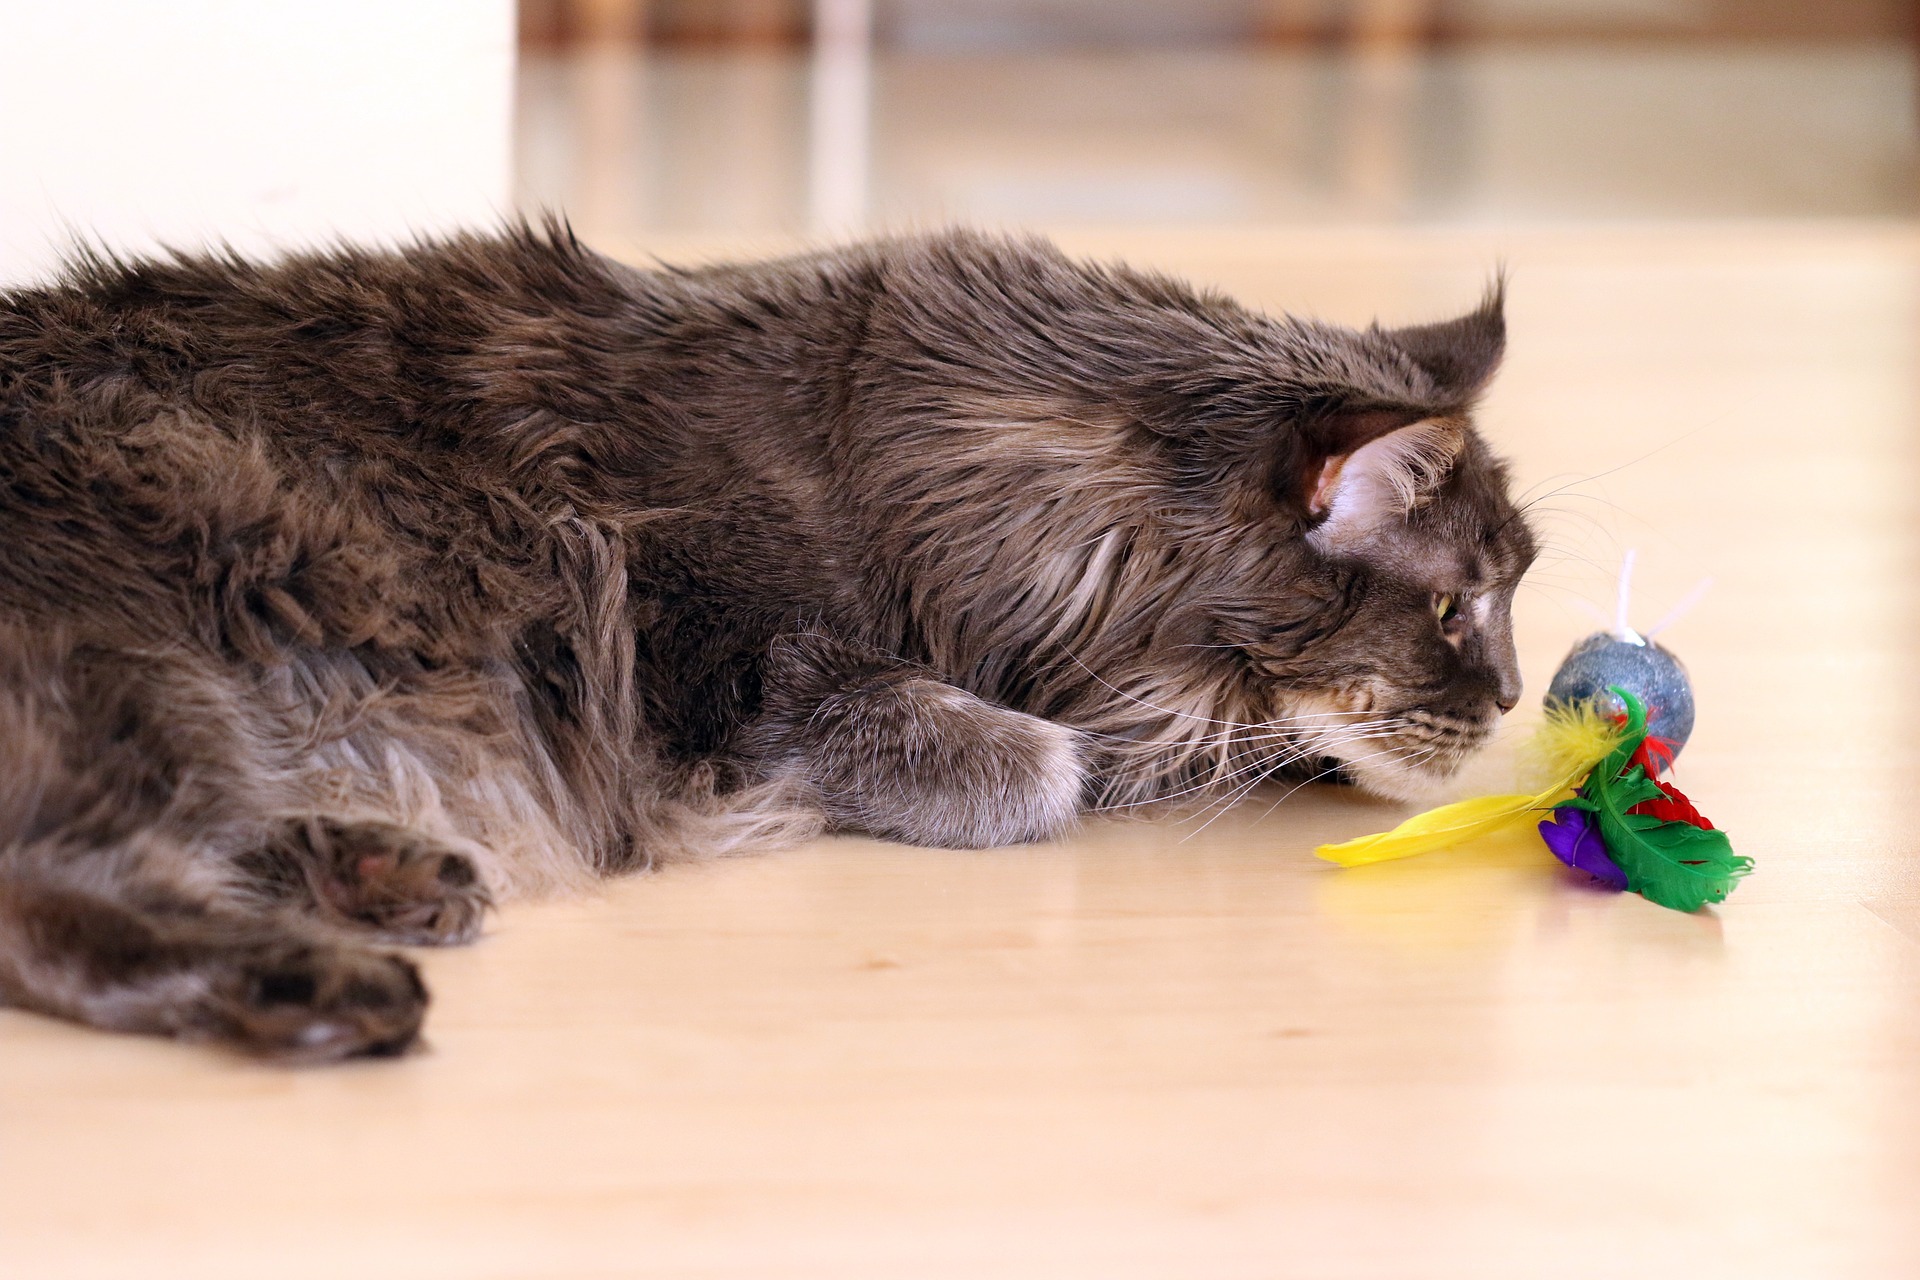 Hra s kočkou by měla sestávat z několika krátkých sezení. Každých asi 10 minut - skončených chycením hračky, může být několik takových sezení v řadě - v závislosti na stavu kočky. Když necháváte kočku samotnou s hračkou, nezapomeňte, že není nezničitelná a její stav by měl být často kontrolován.